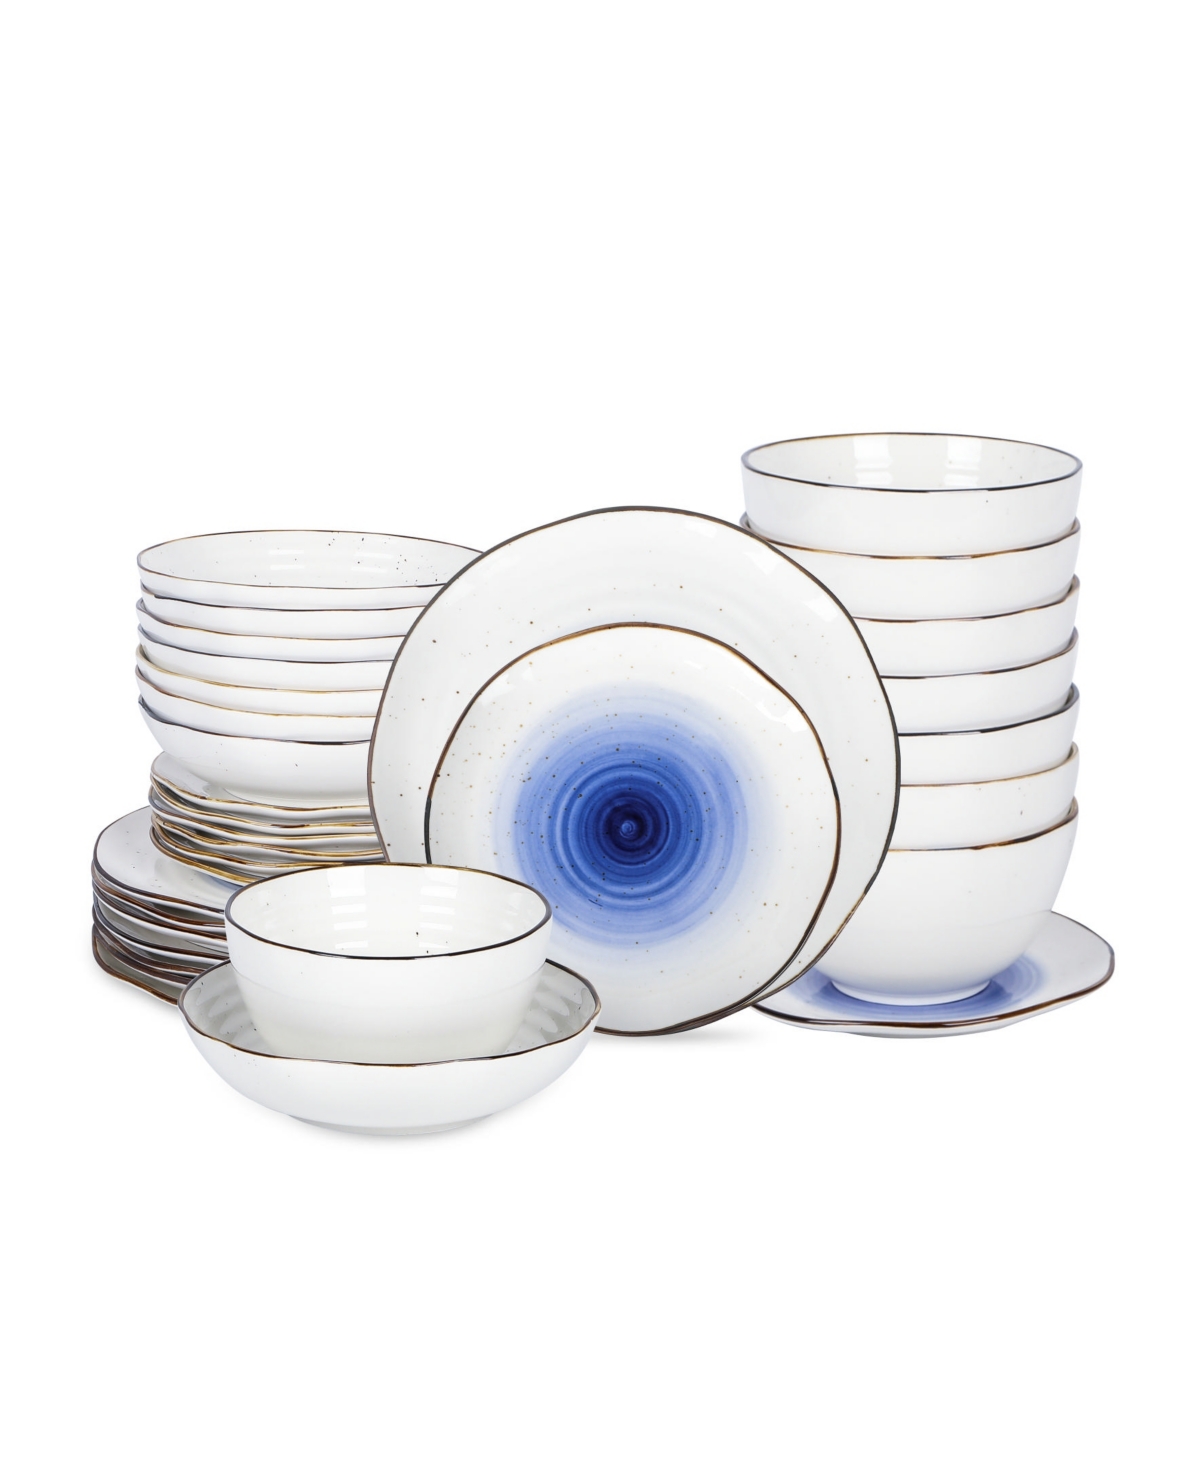 Luma Porcelain 32 Pc. Set, Service for 8 - Blue